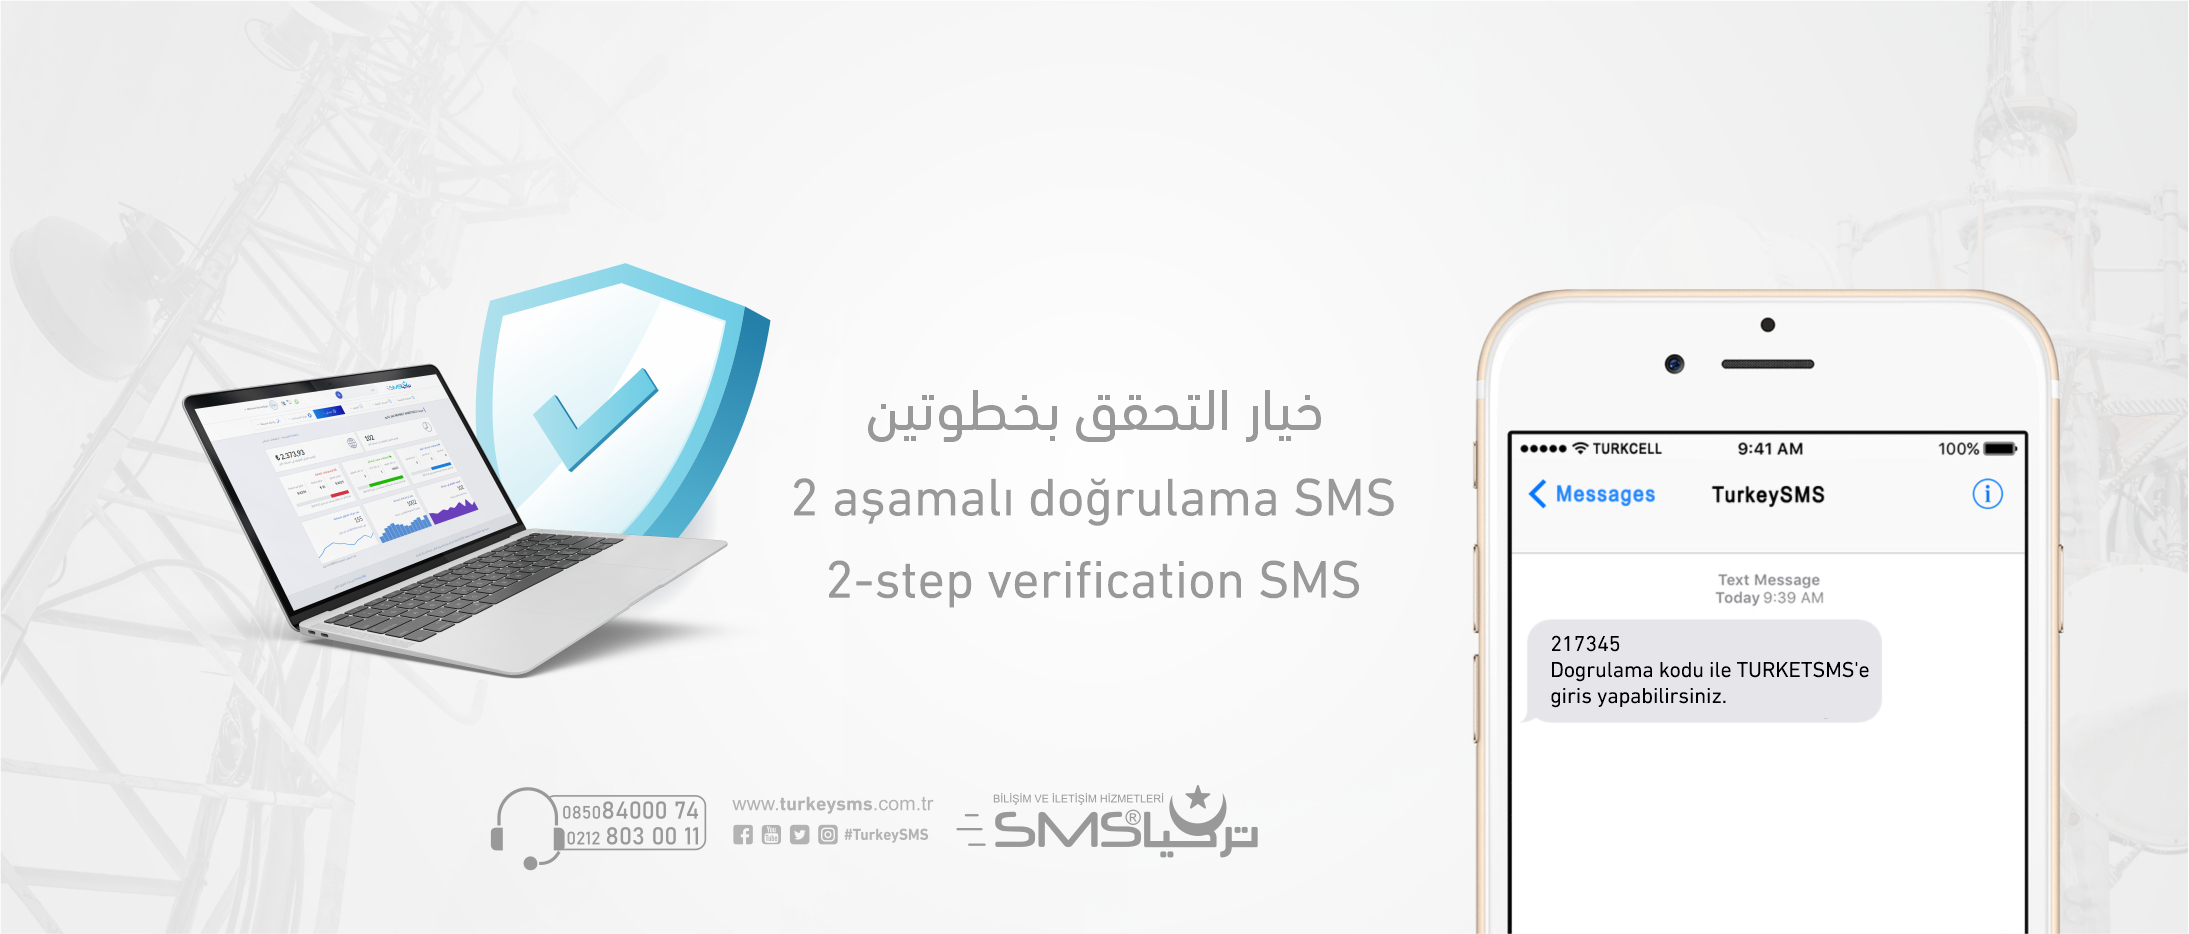 2-step verification SMS